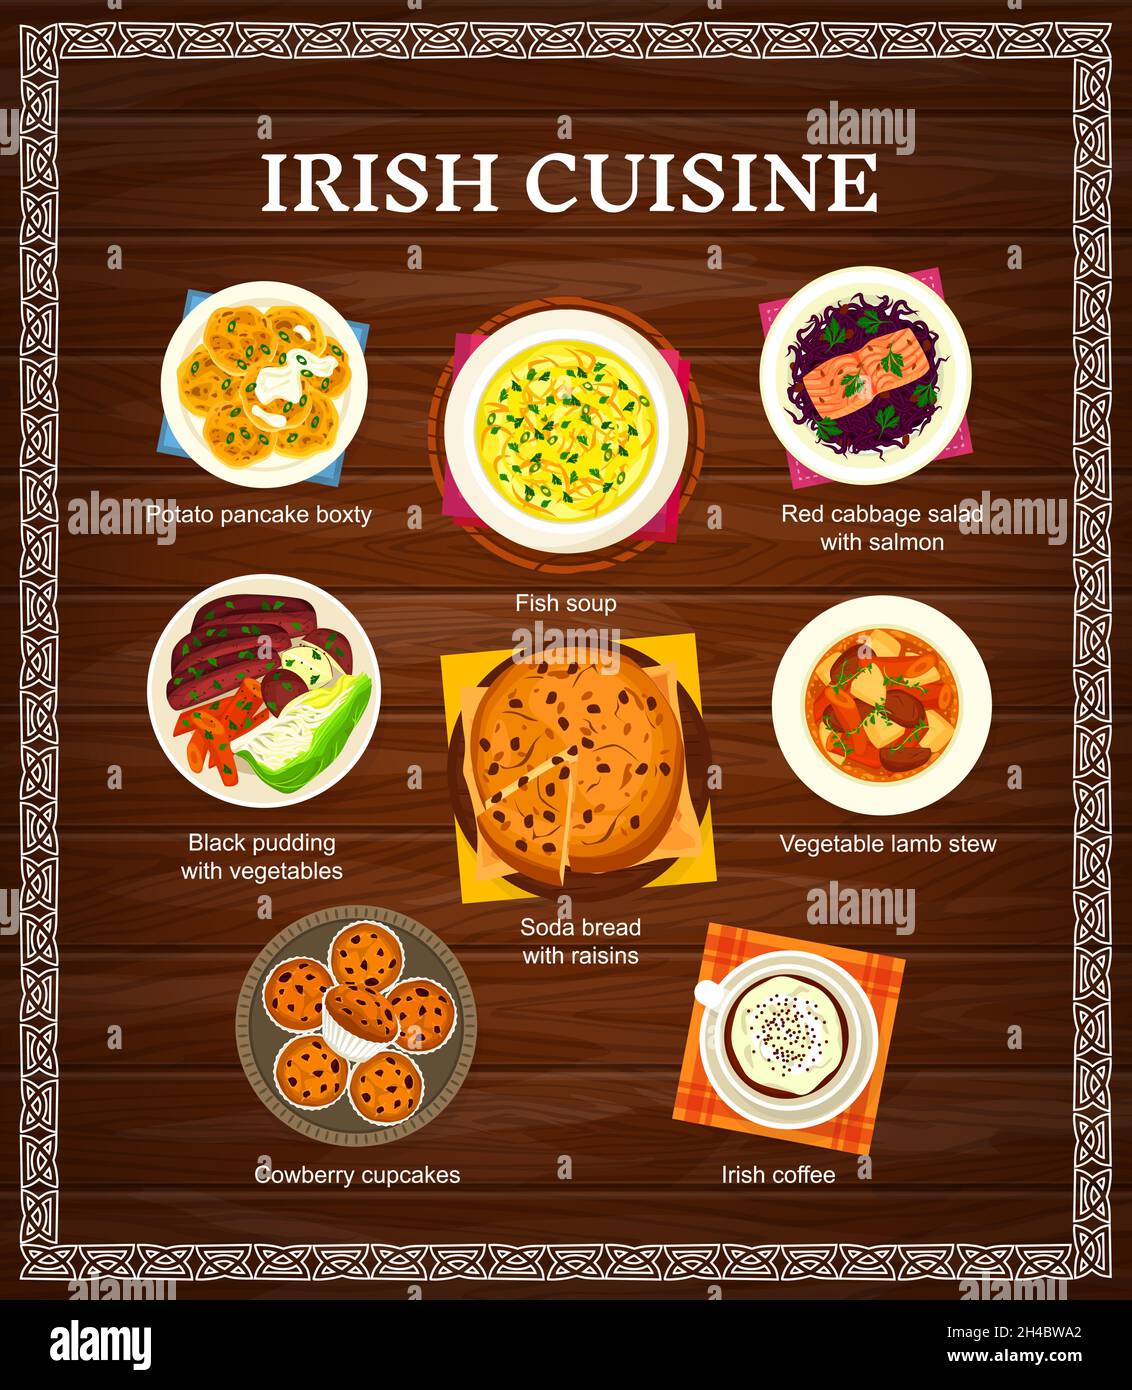 Cucina irlandese menu vettoriale patate frittella boxty, zuppa di pesce e soda pane con uvetta. Tortini di cowberry, stufato di agnello e budino nero con verdure. Illustrazione Vettoriale